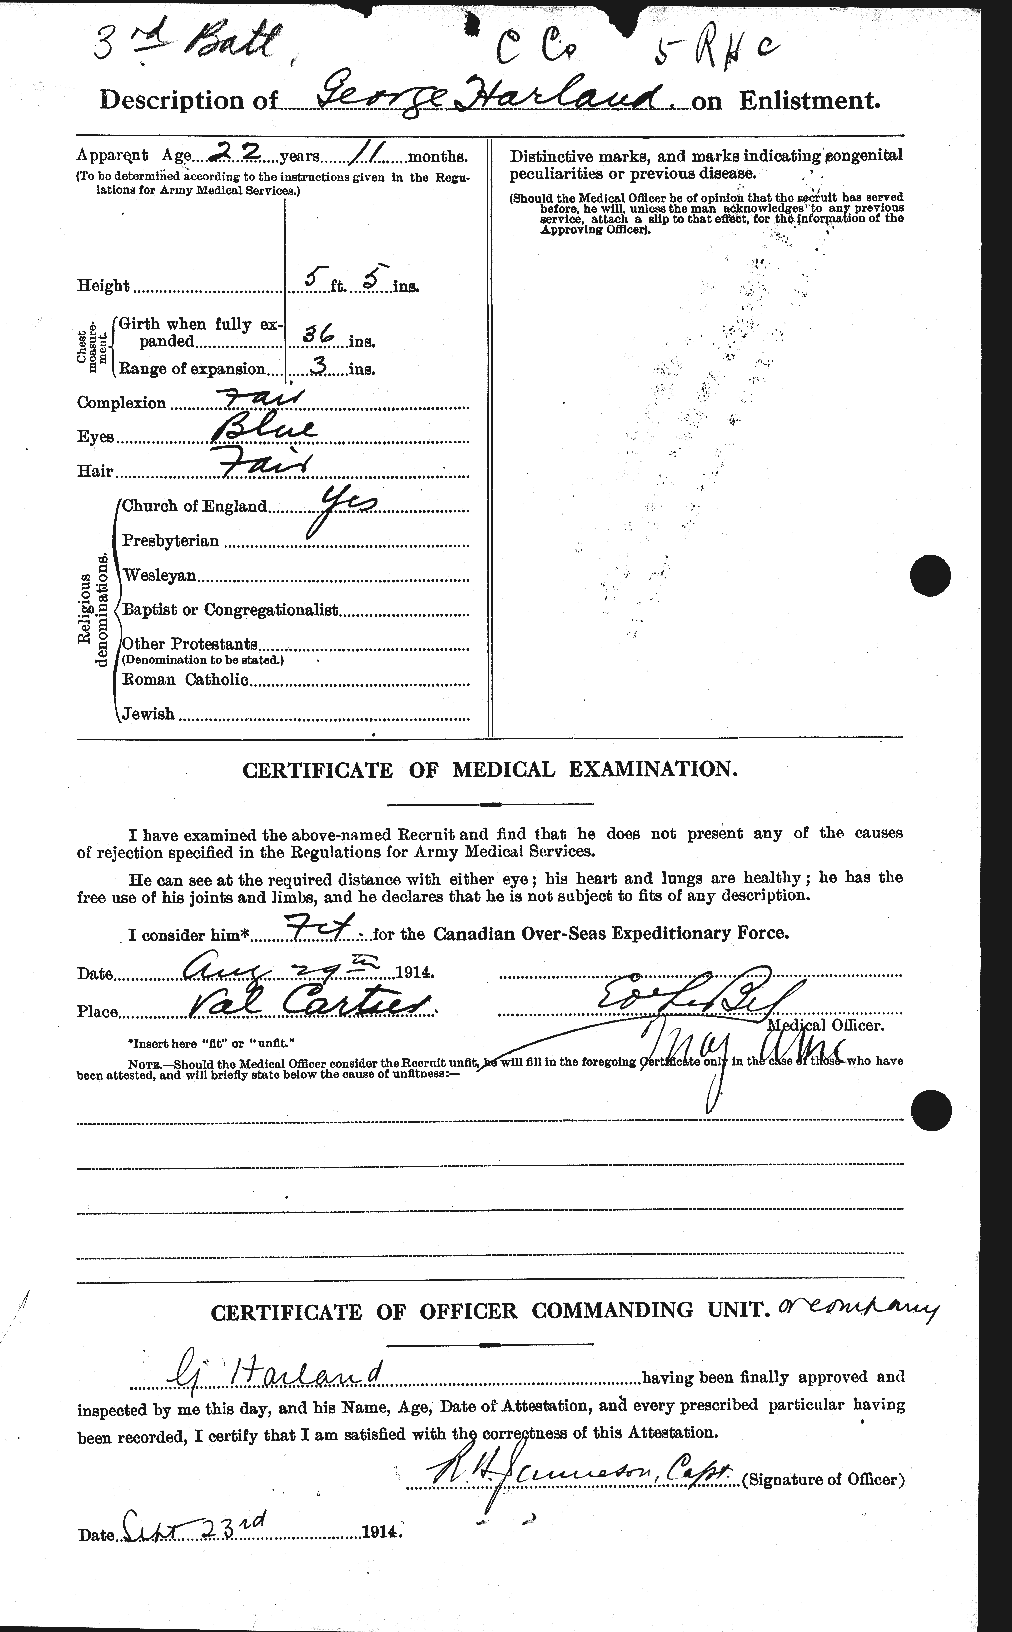 Dossiers du Personnel de la Première Guerre mondiale - CEC 376685b